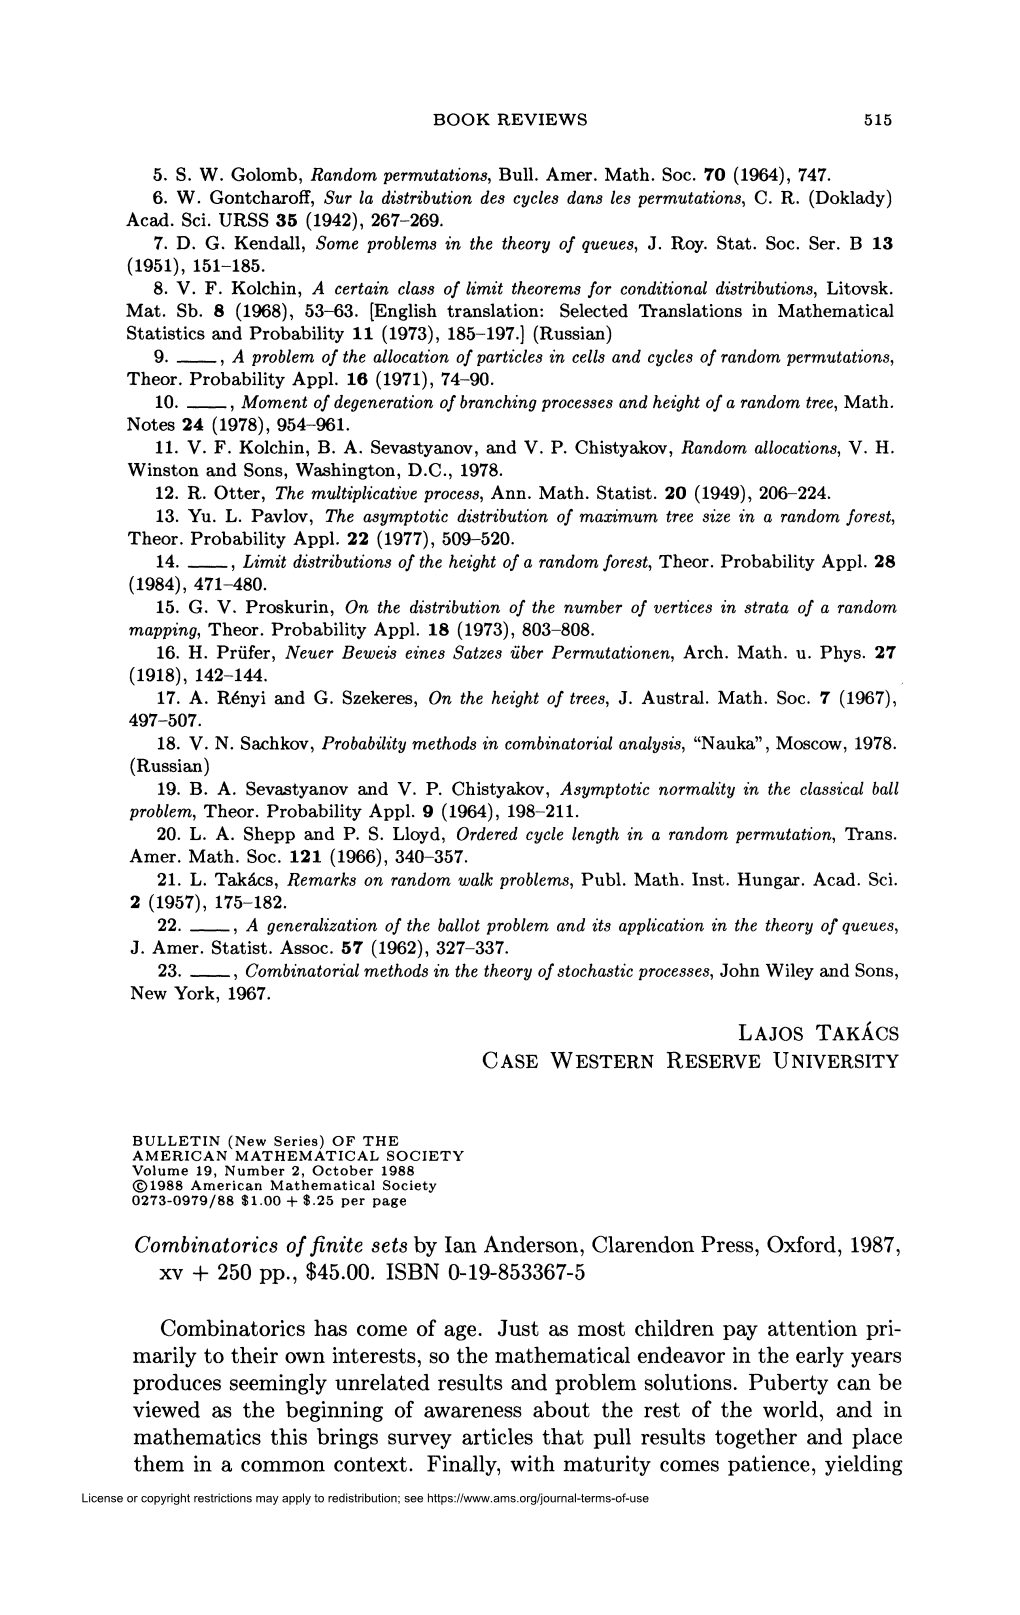 Combinatorics of Finite Sets by Ian Anderson, Clarendon Press, Oxford, 1987, Xv + 250 Pp., $45.00